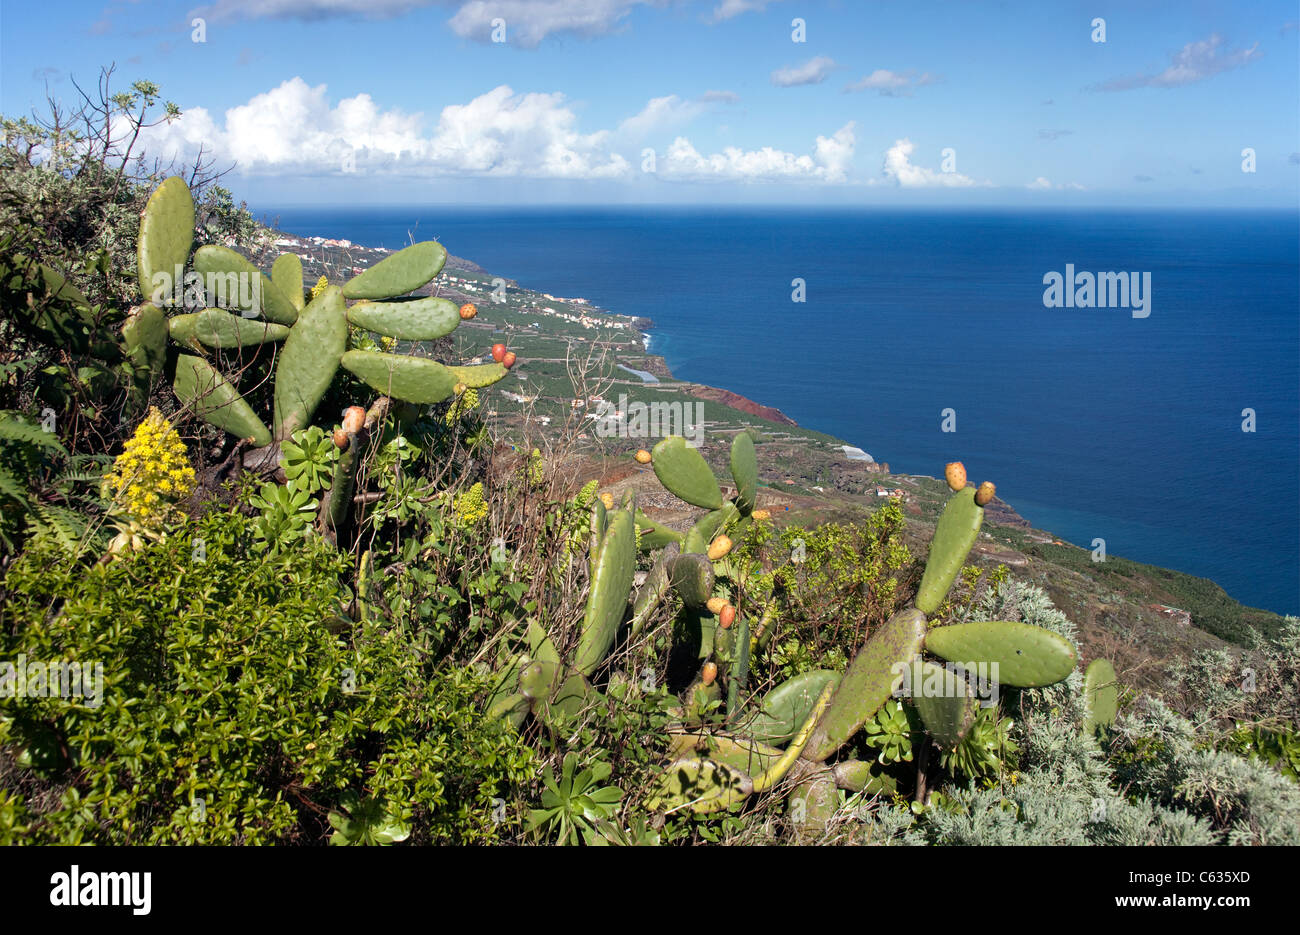 Costa a Bartolo, fichidindia (Opuntia ficus-indica), la palma isole canarie Spagna, Europa Foto Stock